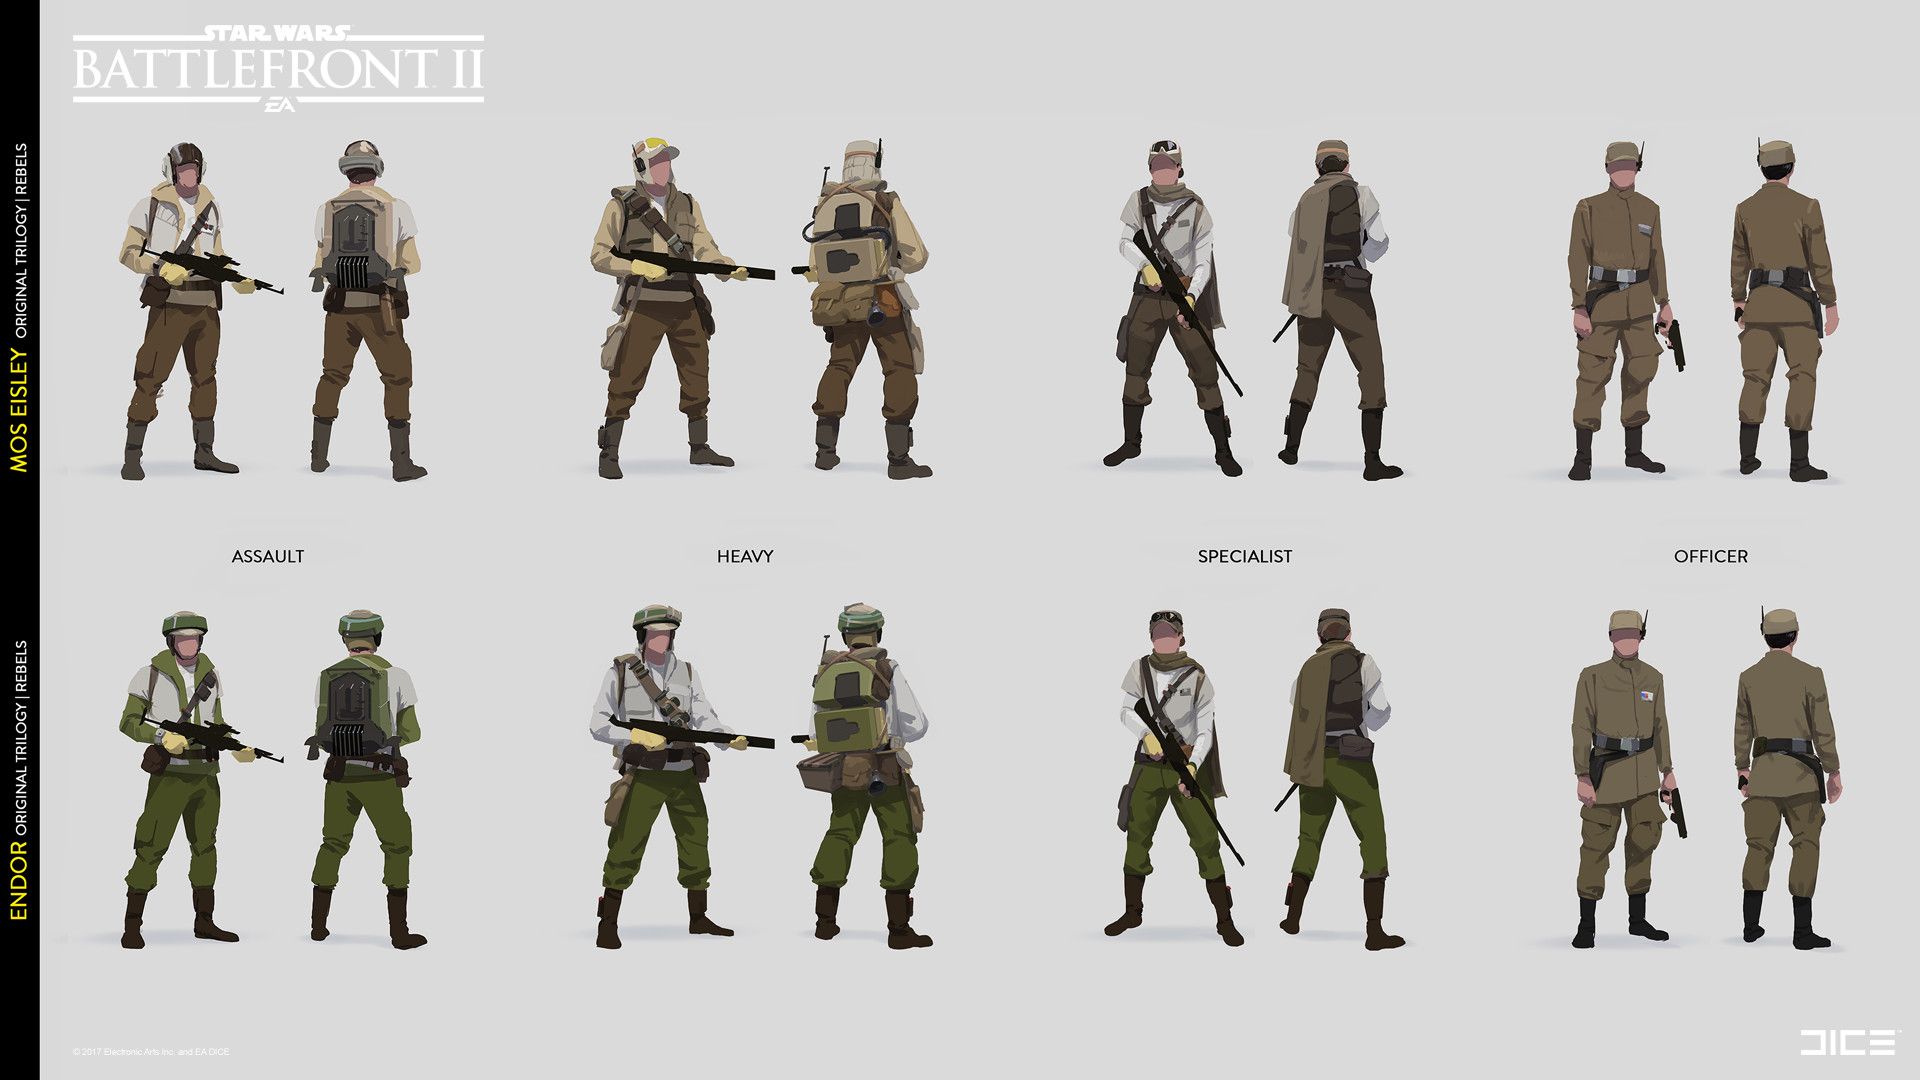 Trooper designs for Star Wars Battlefront II, Sigurd